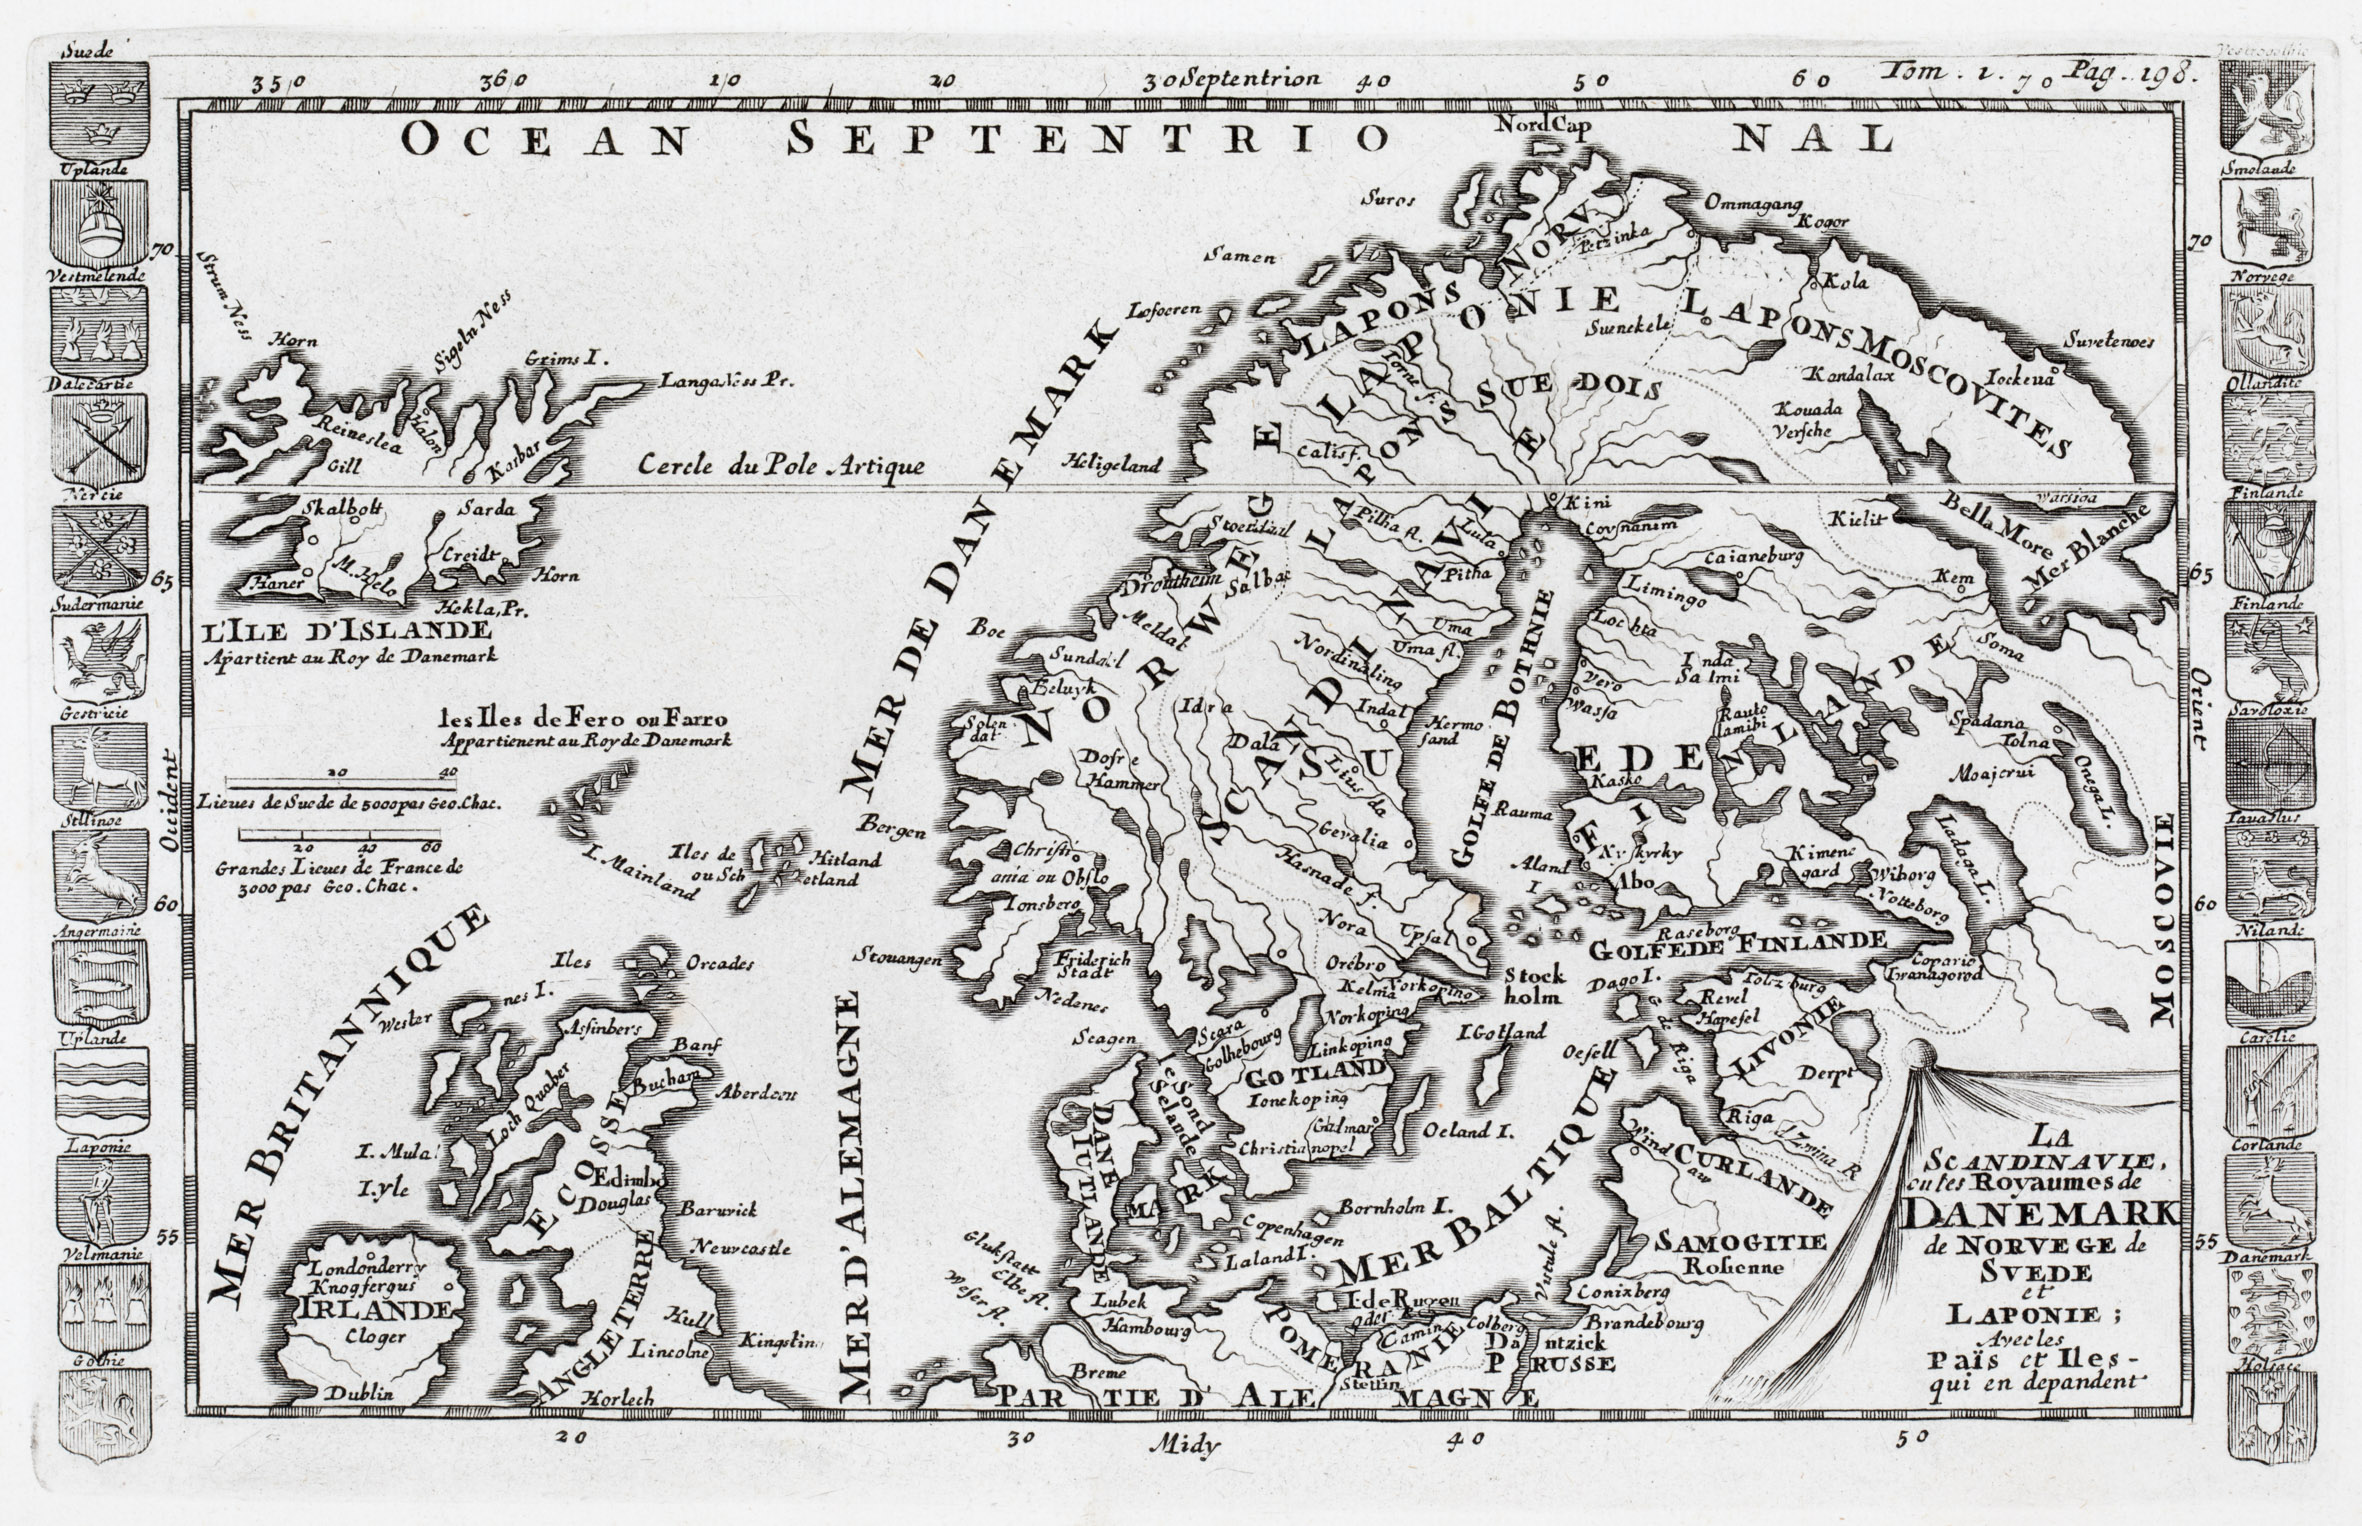 144. La Scandinavie, ou les Royaumes de Danemark de Norwege de Suede et Laponie; avec les Pais et Isles qui en depandent